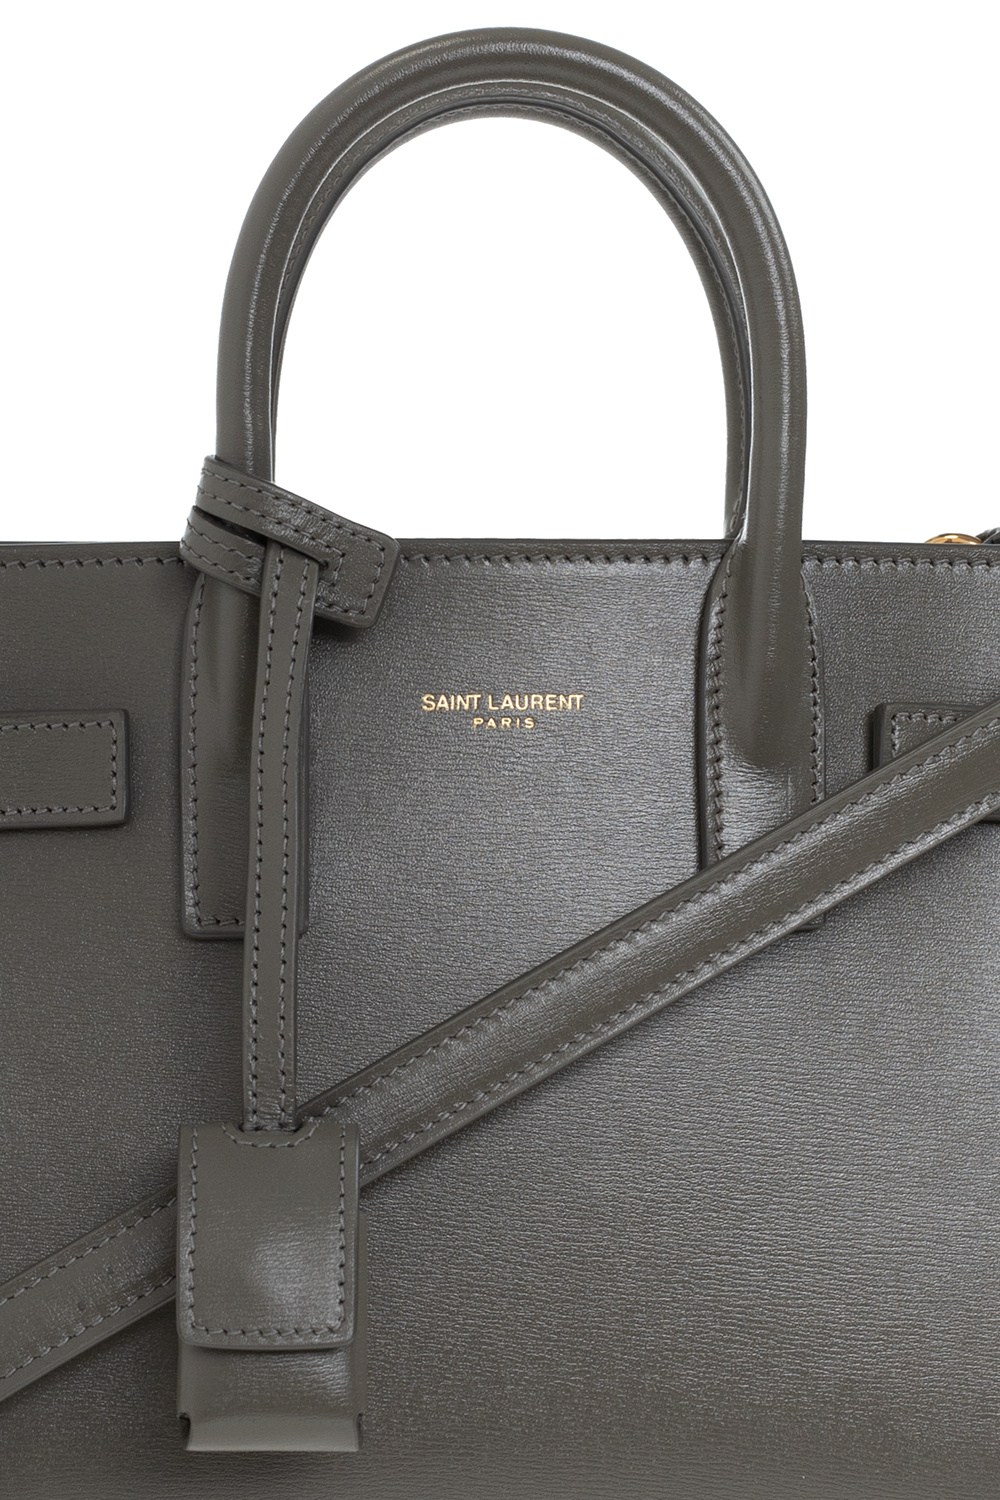 Saint Laurent Nano Sac de Jour Leather Top Handle Bag